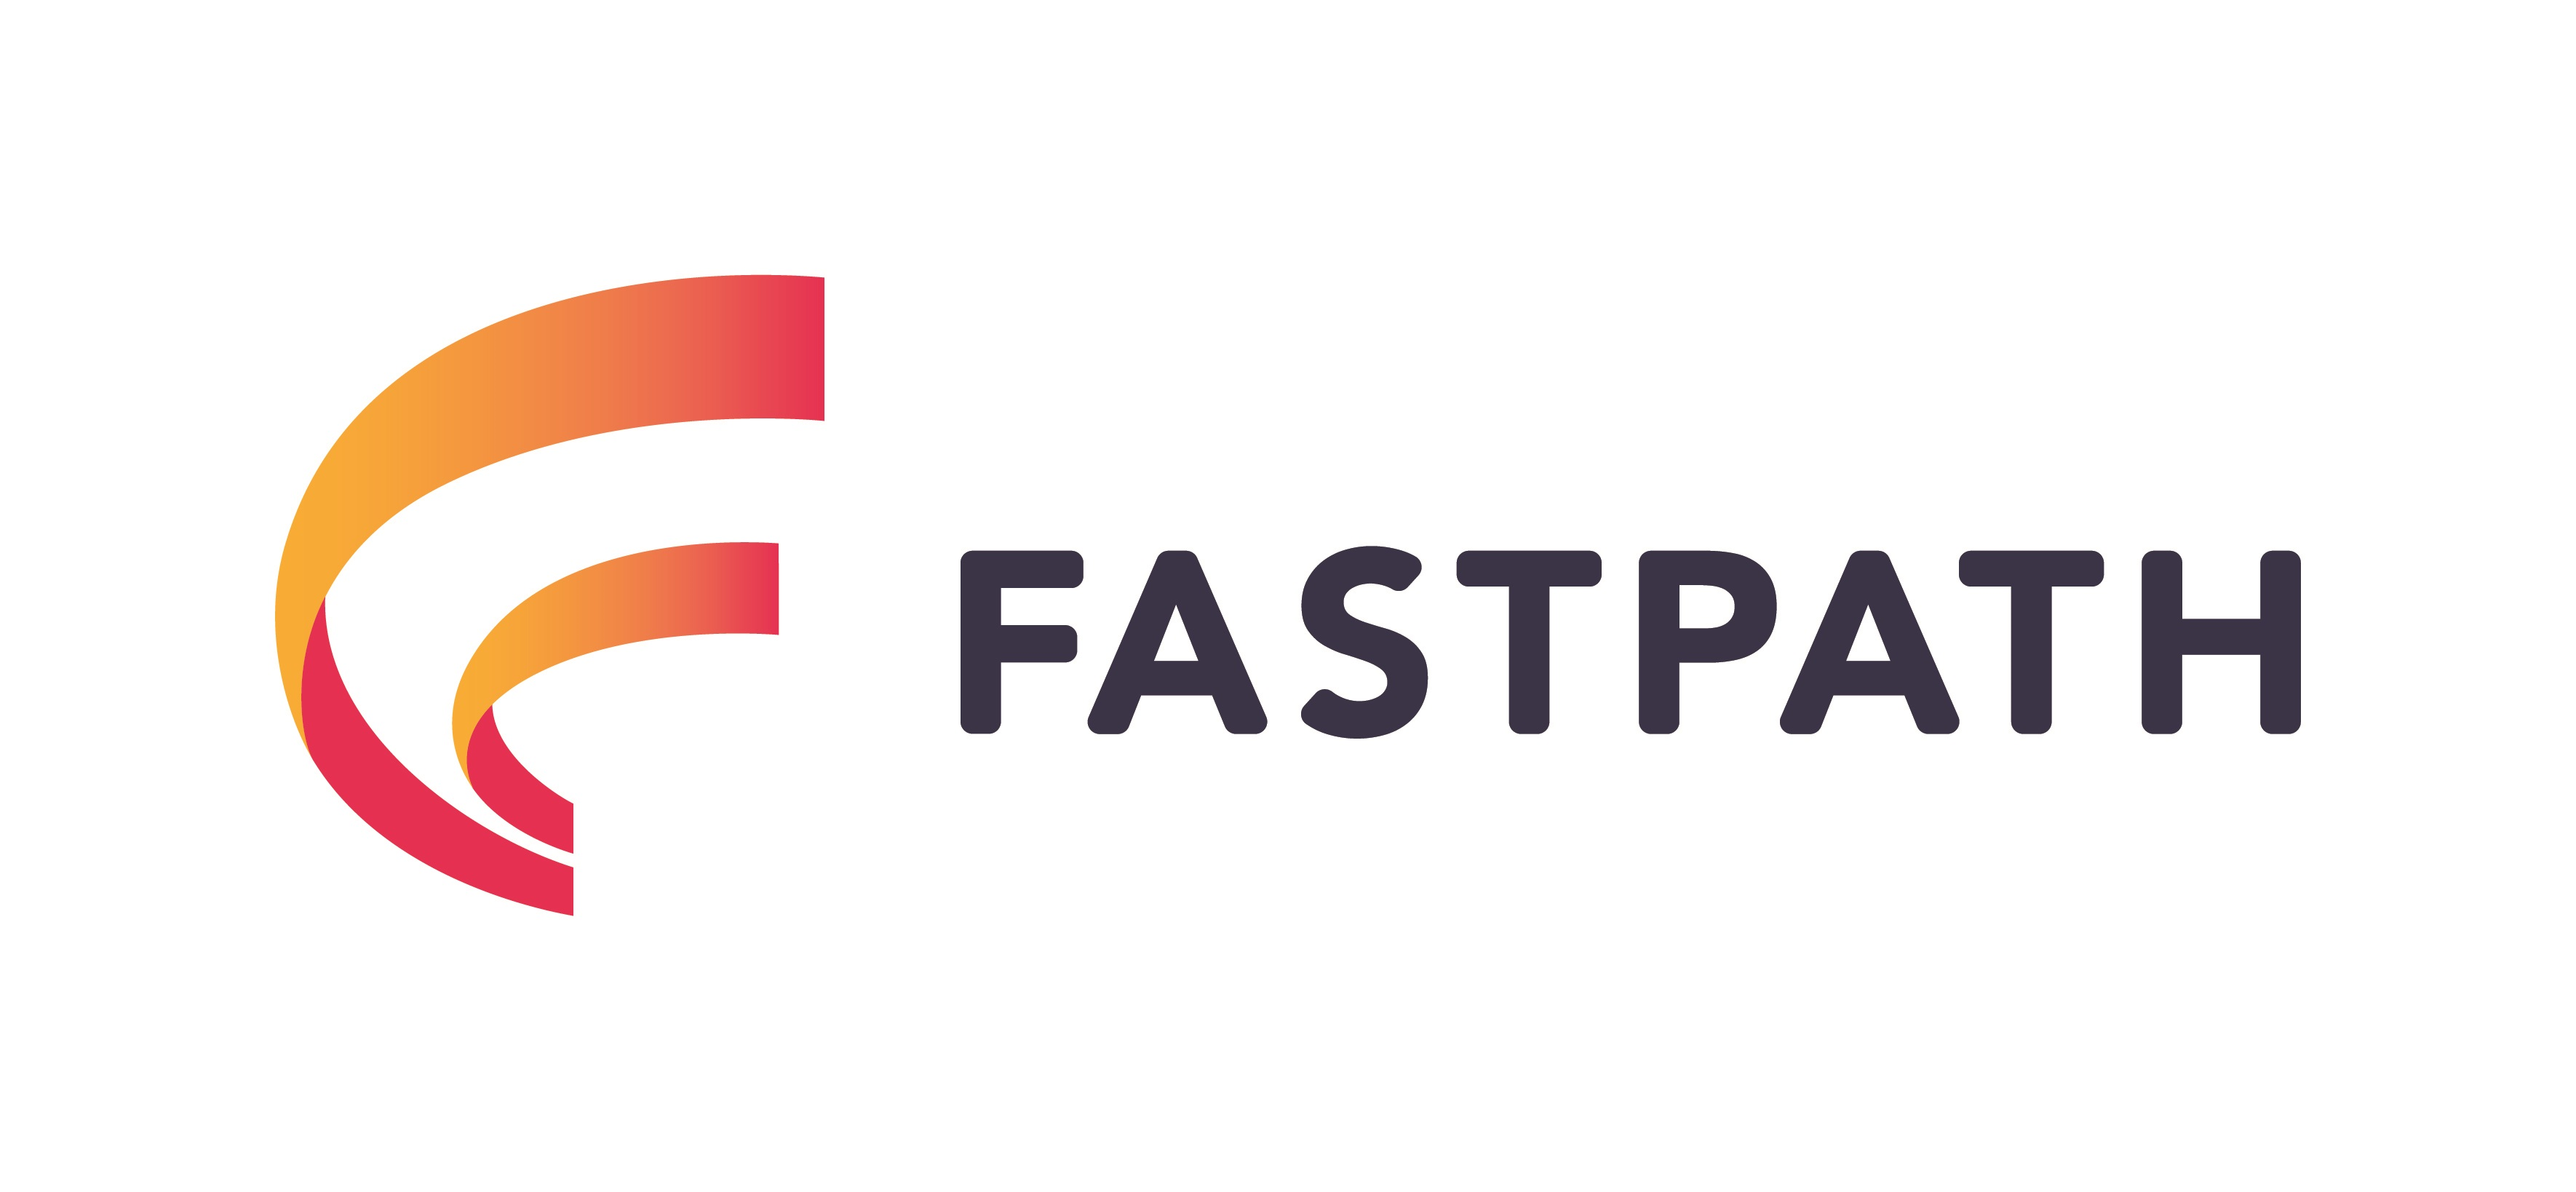 Fastpath logo